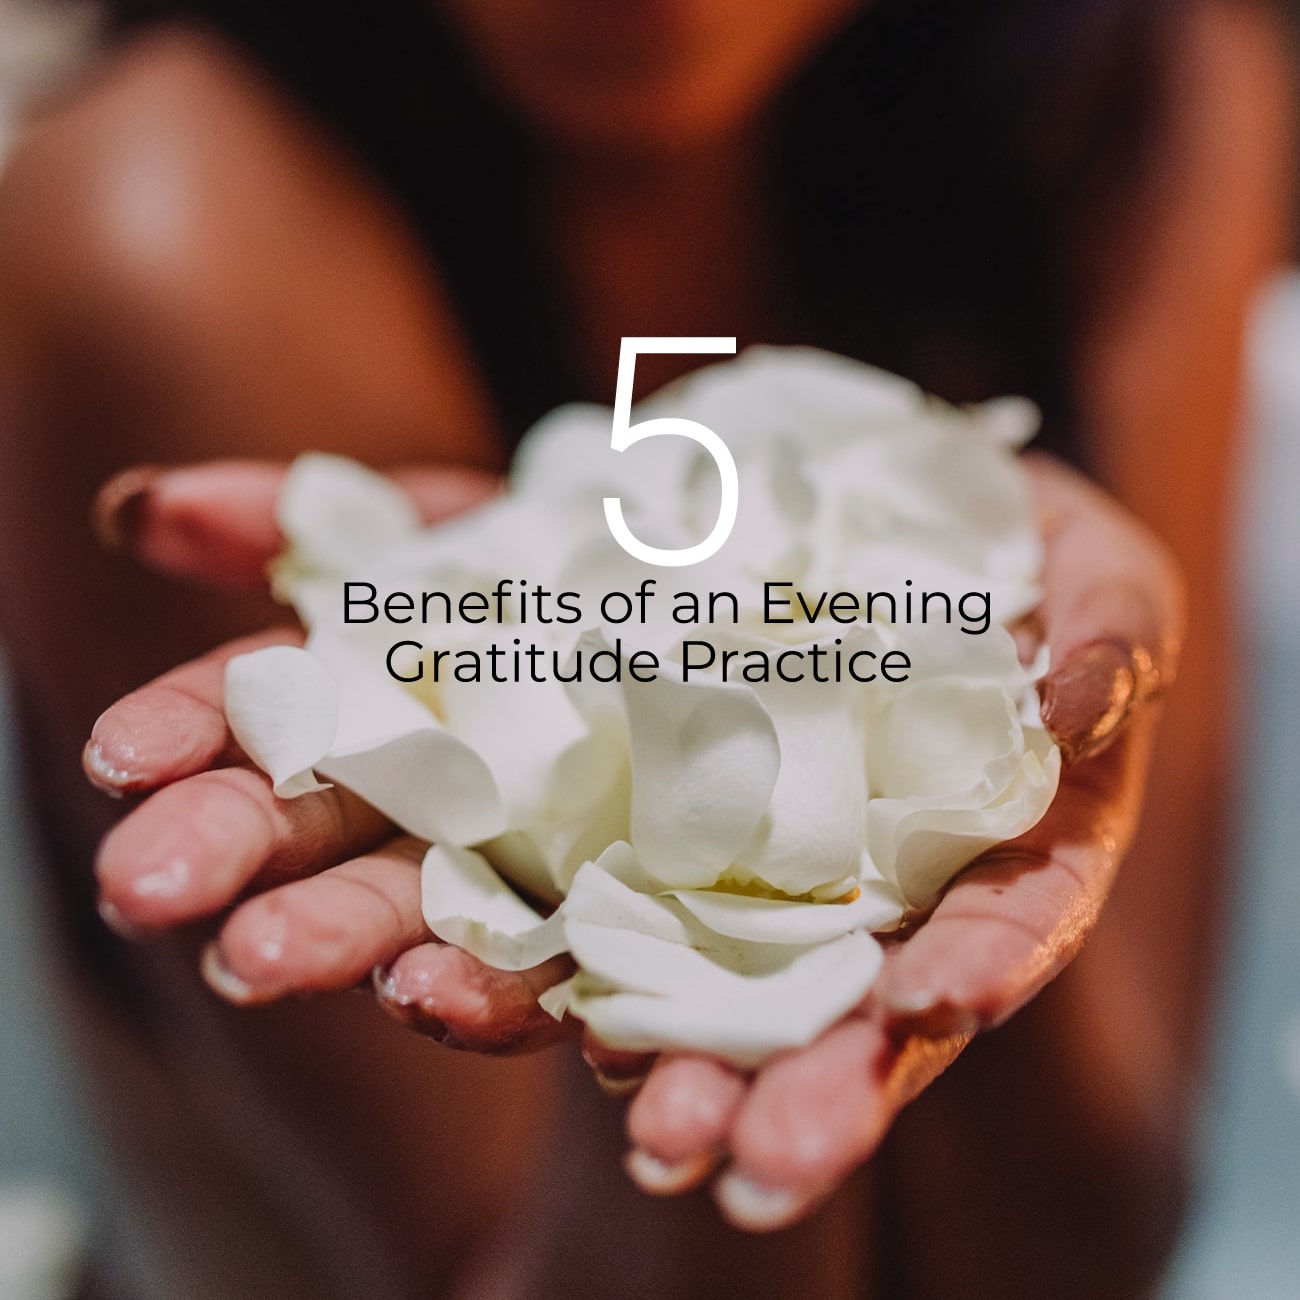 5 Benefits of an Evening Gratitude Practice